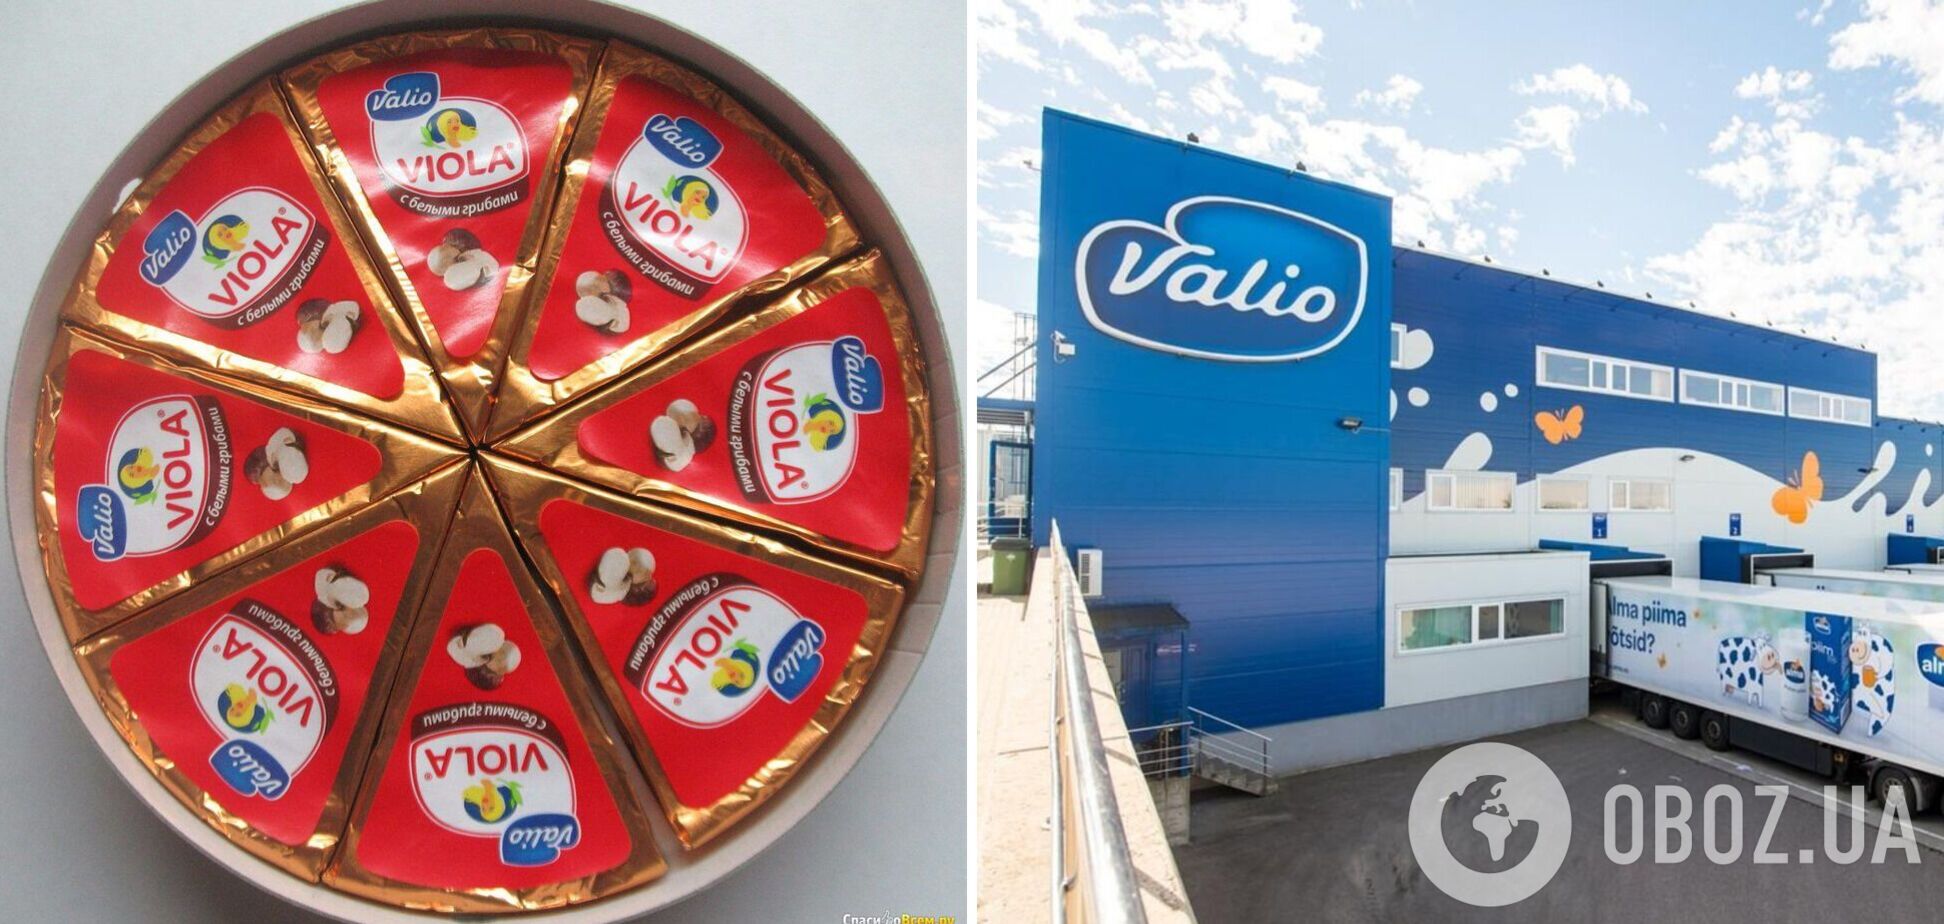 Сыр 'Виола' останется в России, но производитель будет другим